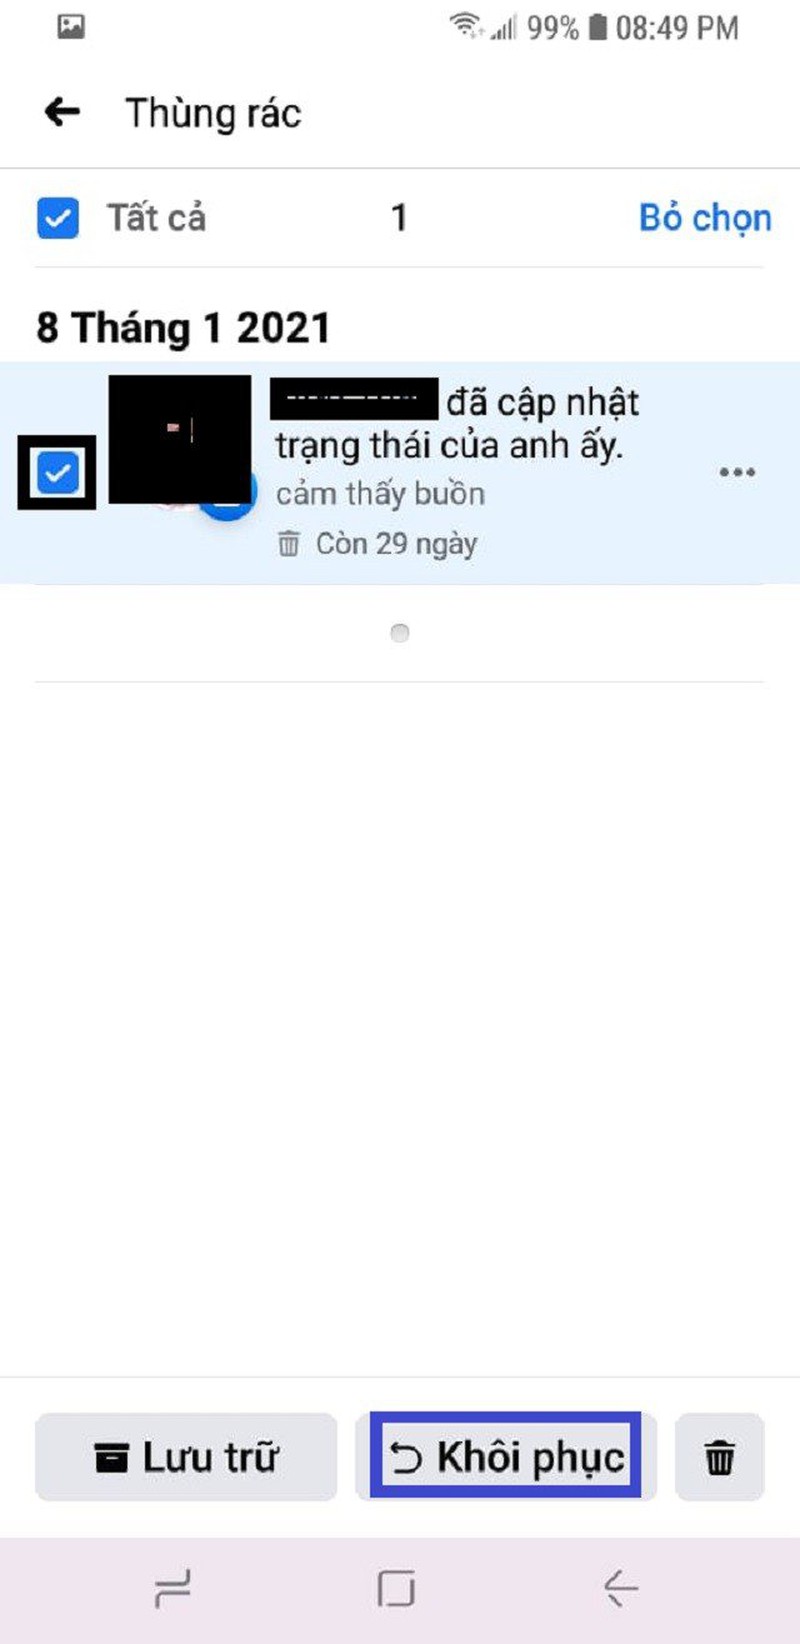 Cach khoi phuc bai viet da xoa tren Facebook sieu don gian-Hinh-4